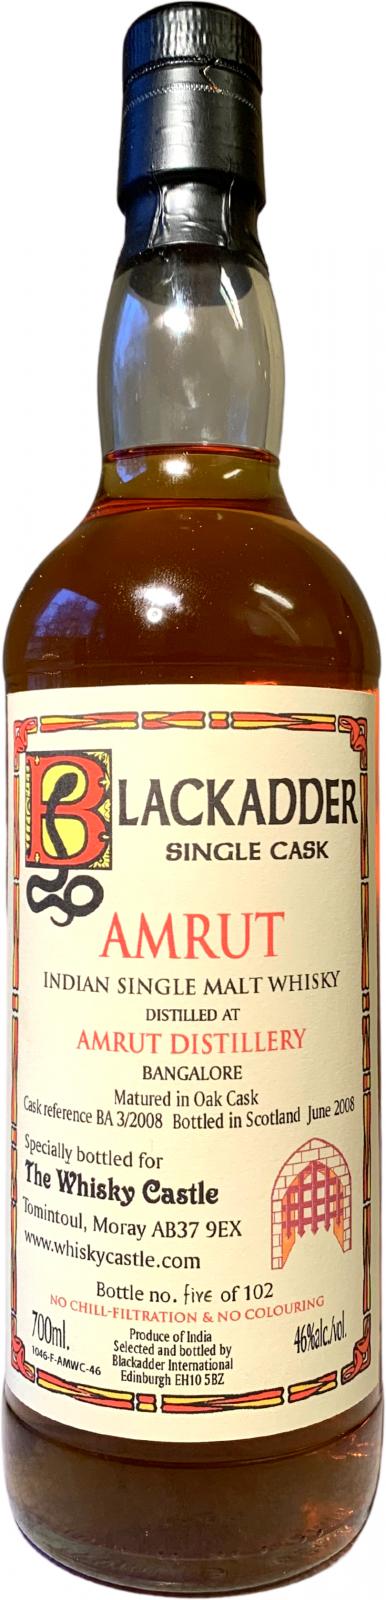 Amrut BA Single Cask The Whisky Castle Tomintoul 46% 700ml